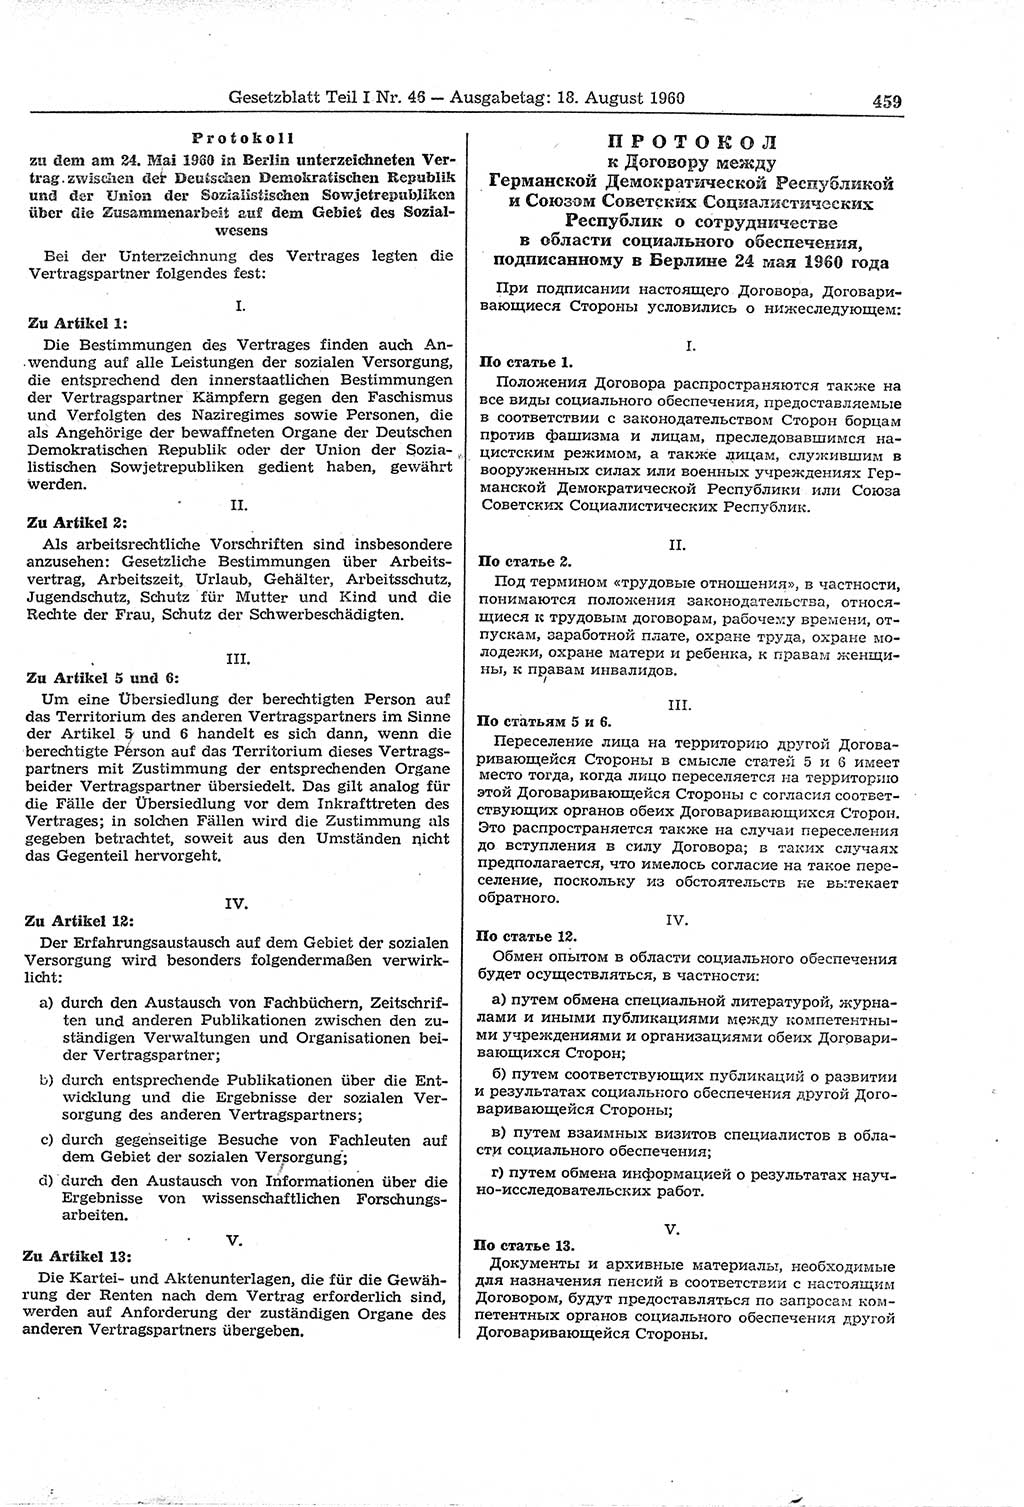 Gesetzblatt (GBl.) der Deutschen Demokratischen Republik (DDR) Teil Ⅰ 1960, Seite 459 (GBl. DDR Ⅰ 1960, S. 459)